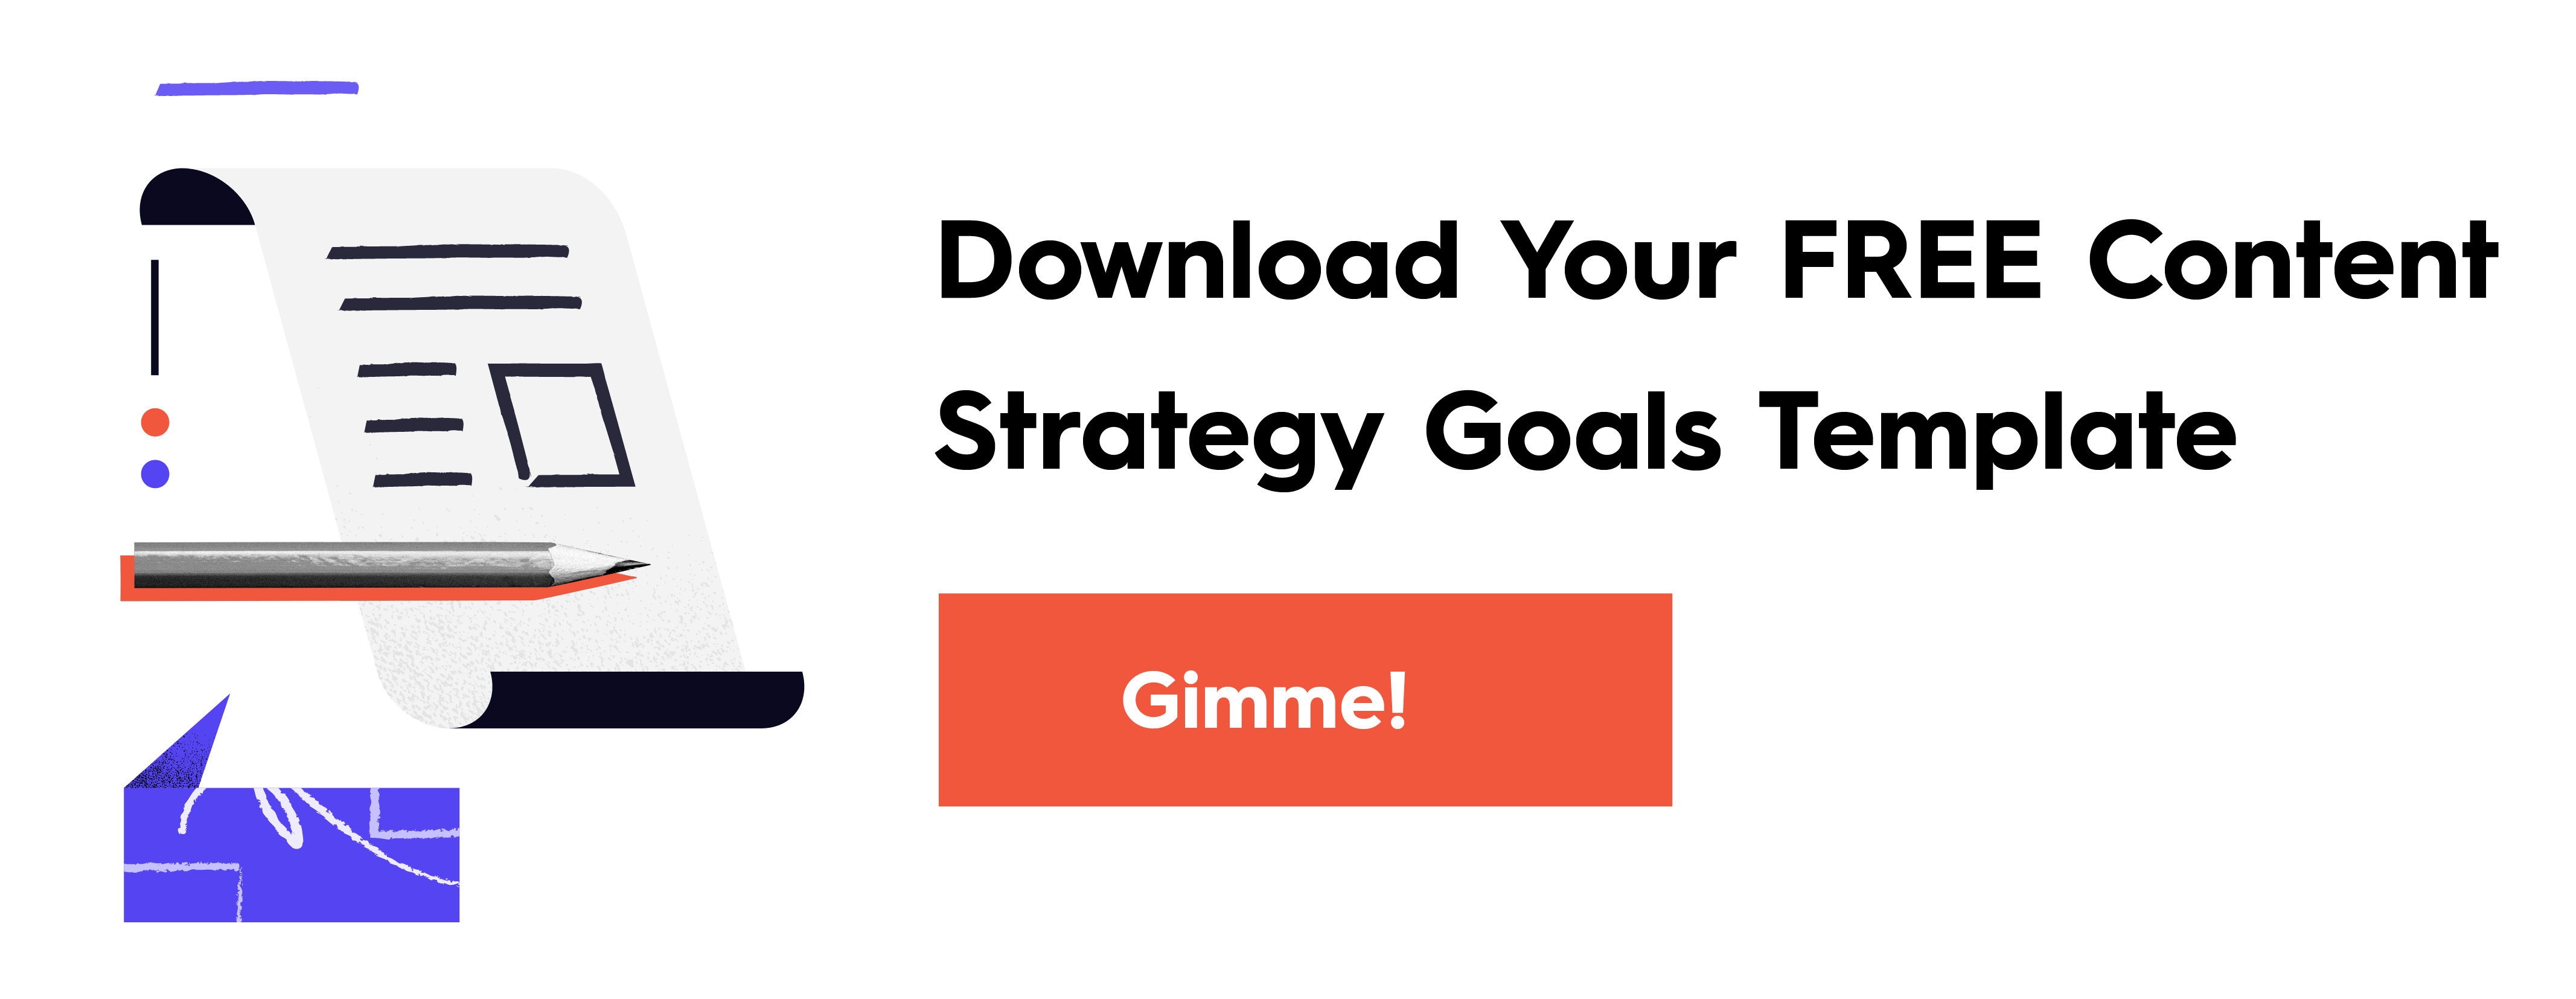 Content-Strategie-Ziele CTA